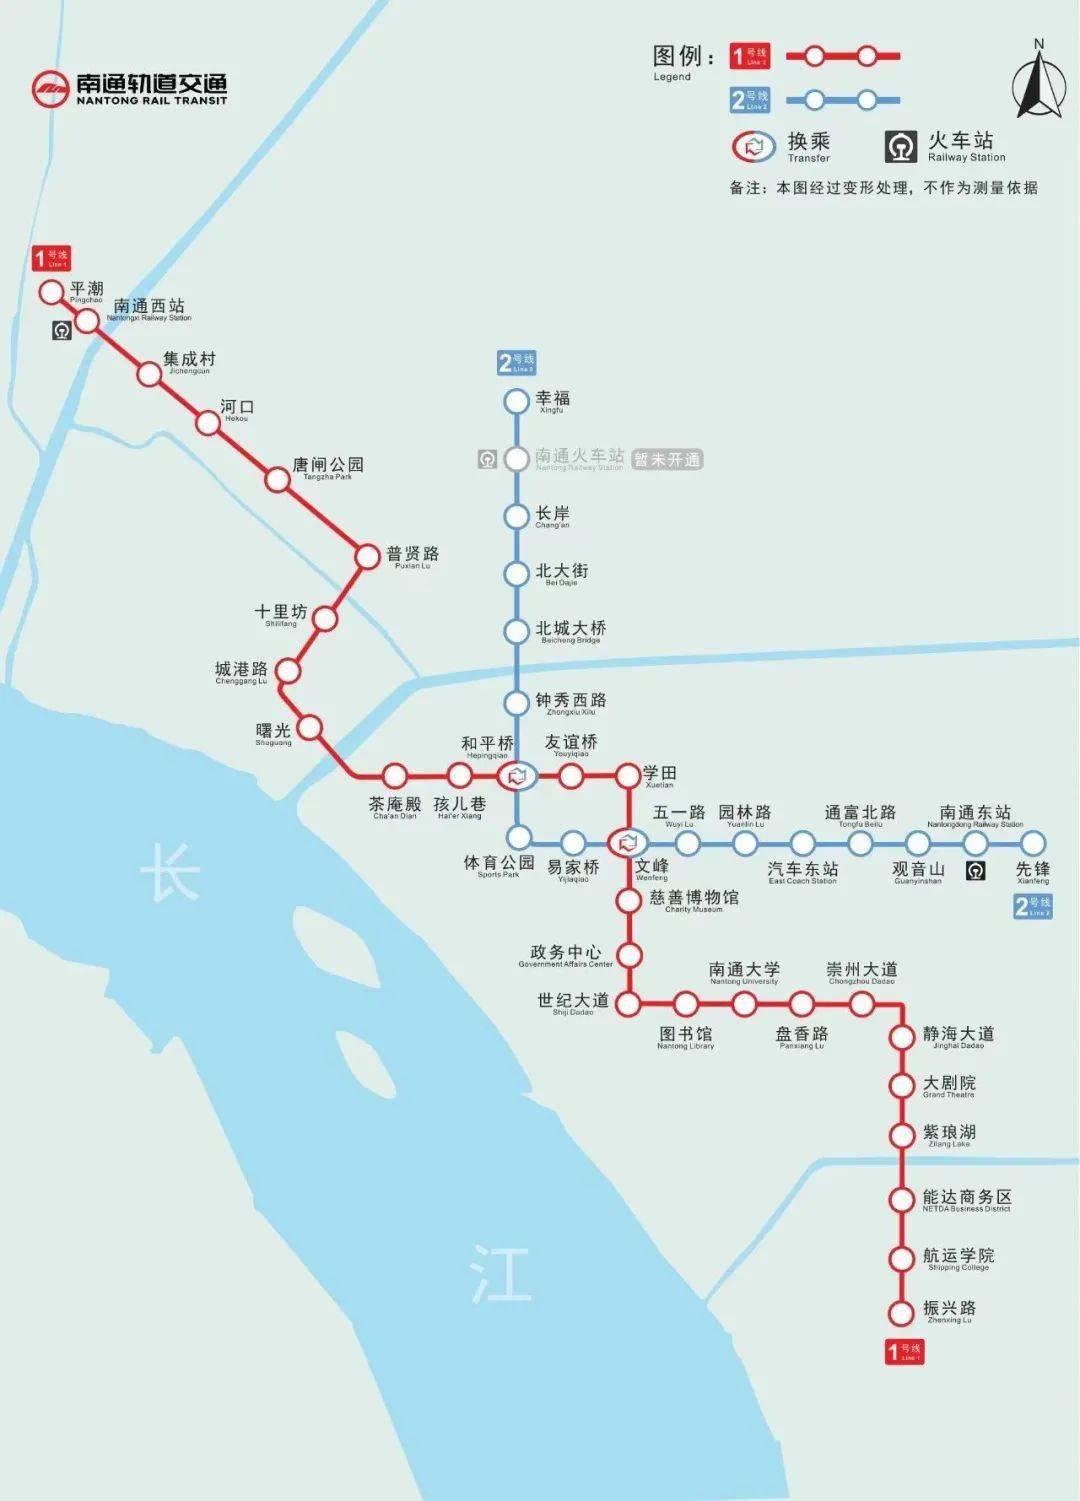 受沪渝蓉高铁建设时序影响,轨道交通2号线南通火车站暂时实行越站运营